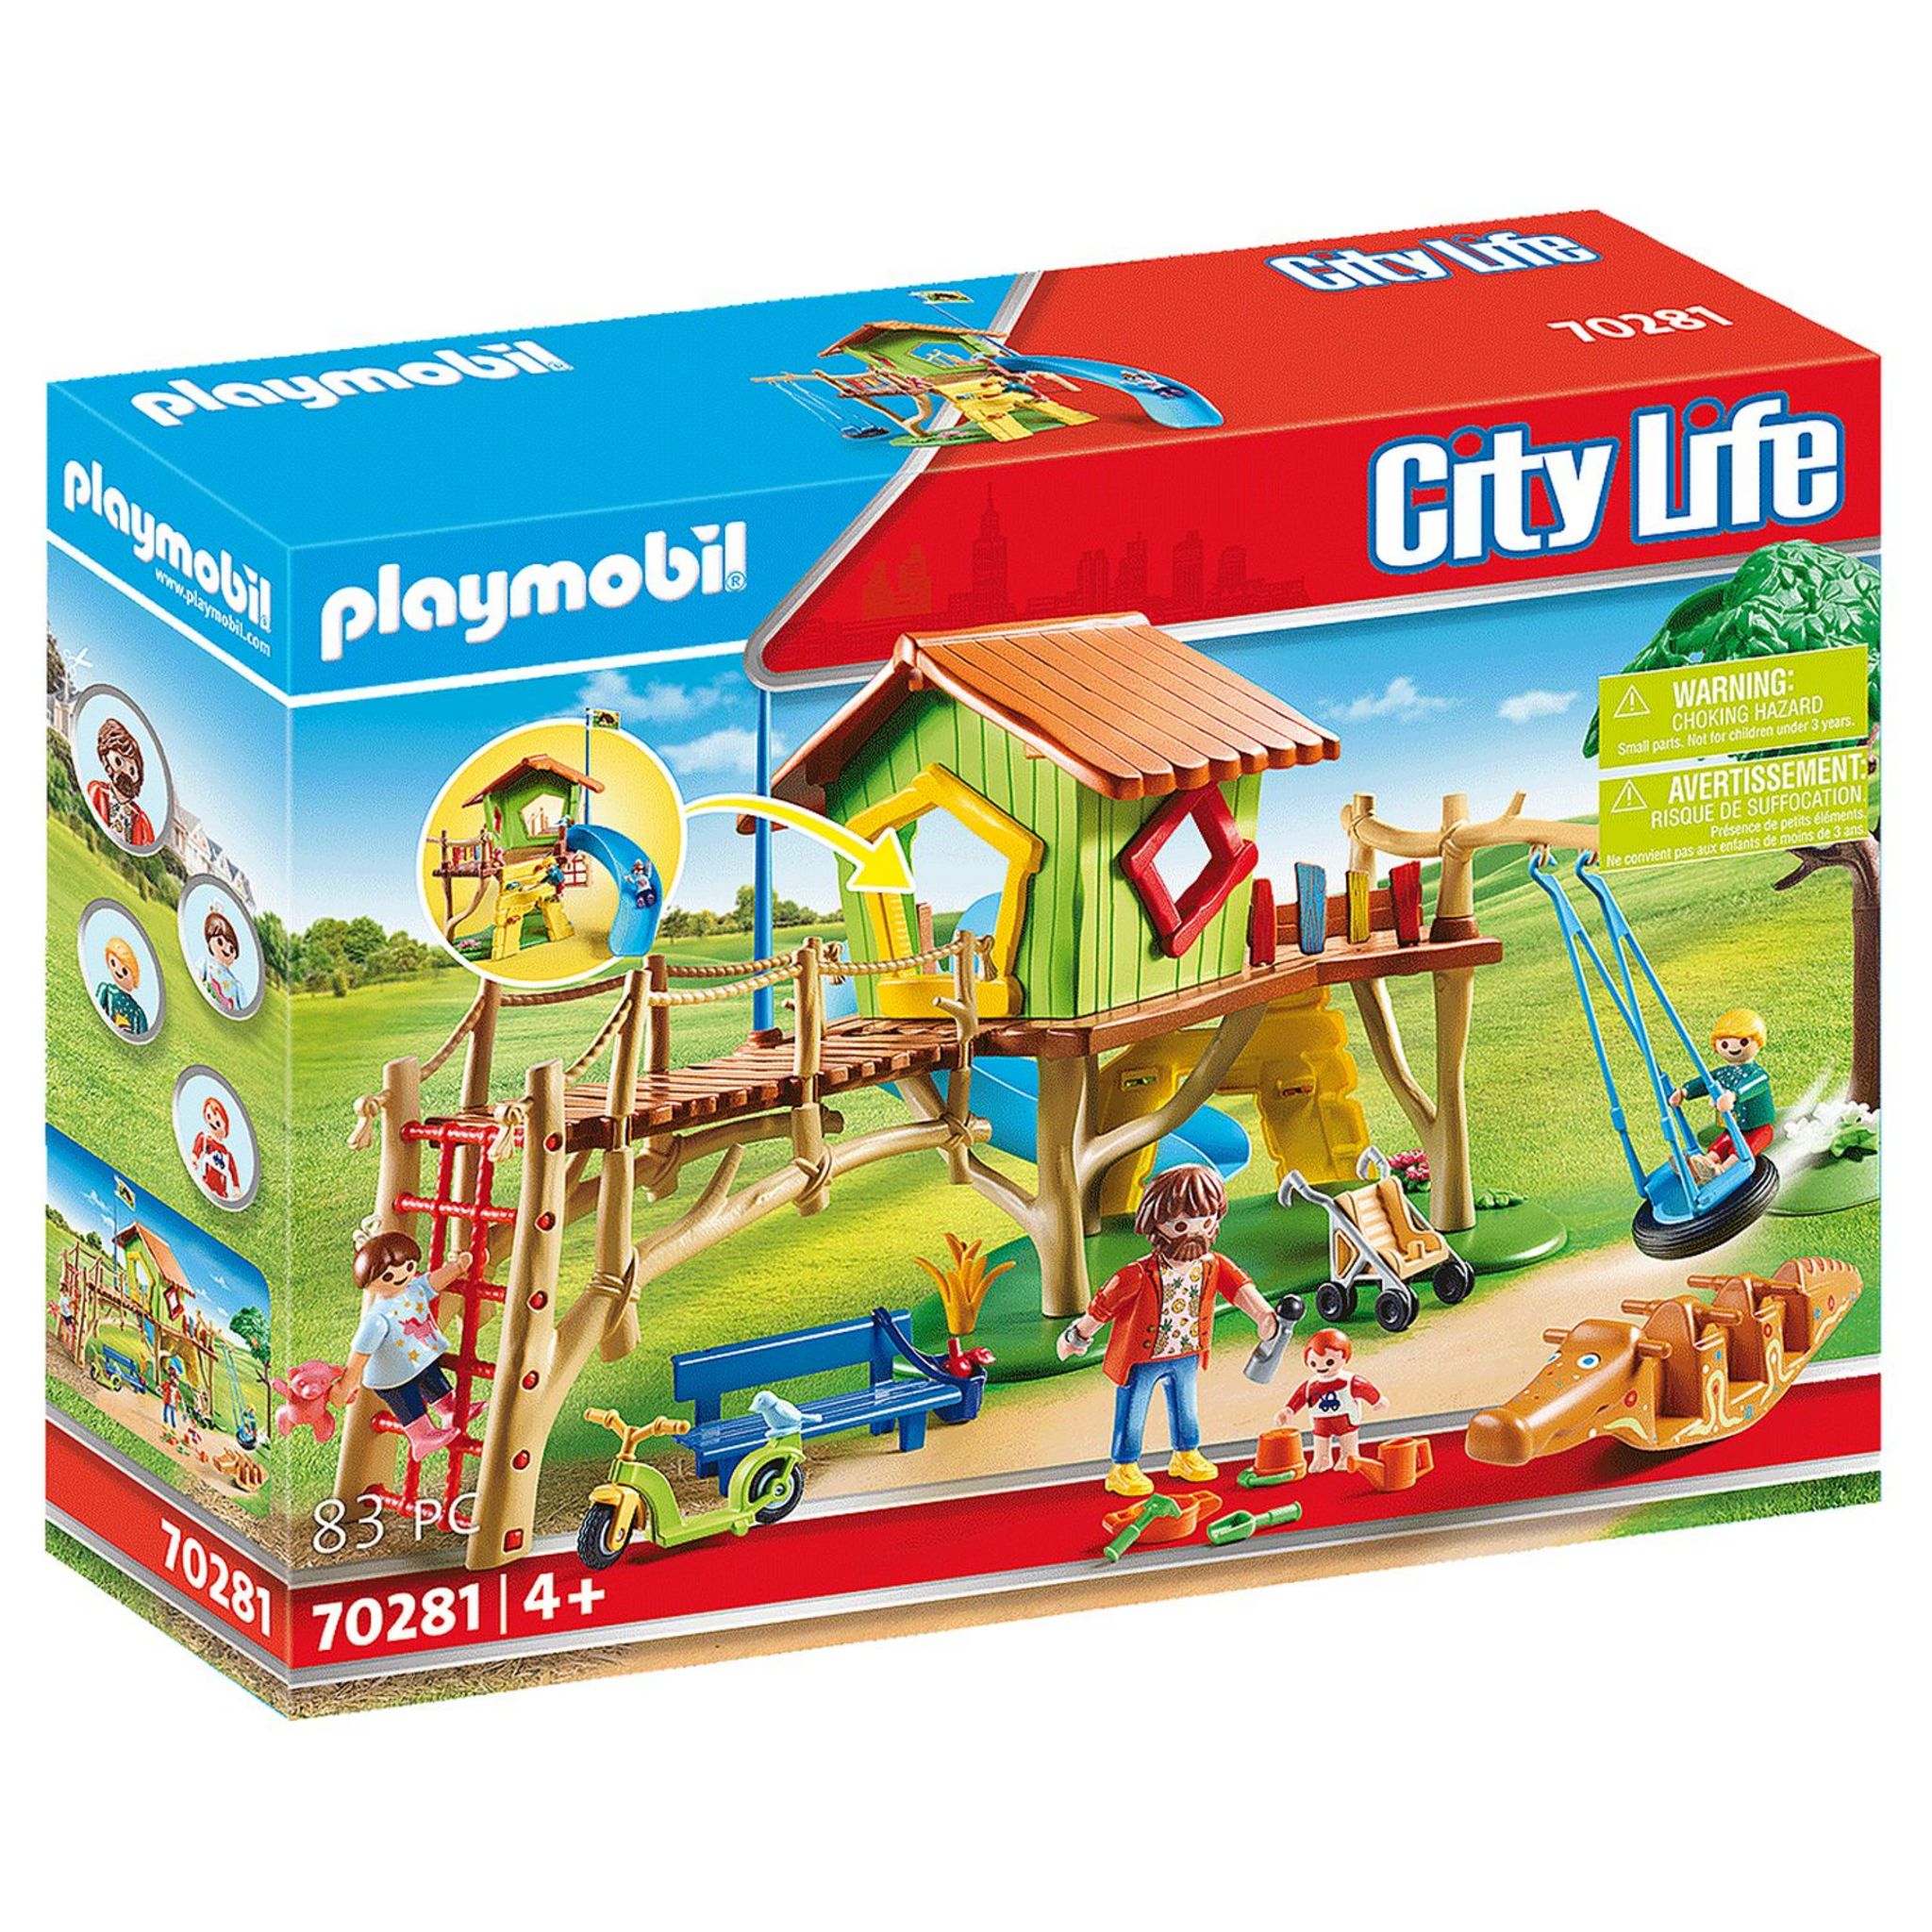 Les meilleurs jouets Playmobil pour les enfants de 4 ans